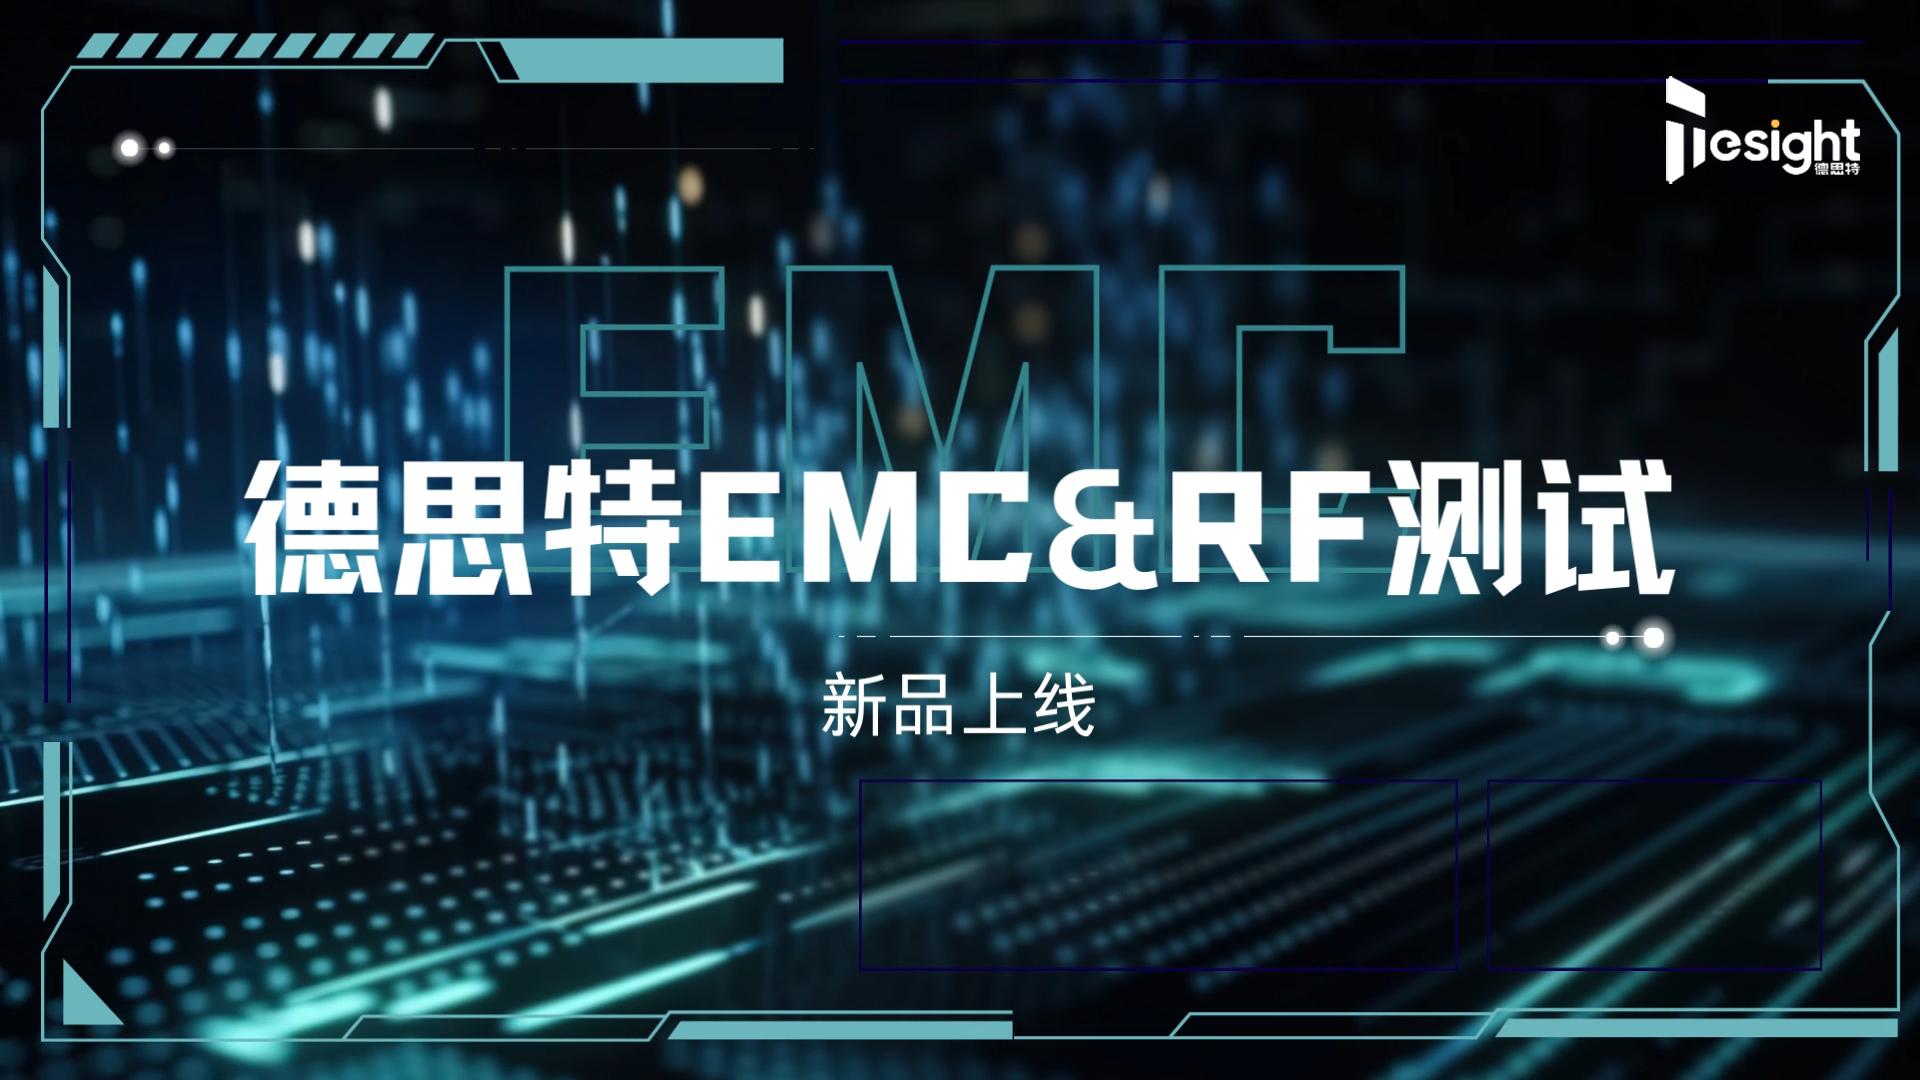 #EMC &#RF 测试系列方案#射频 #射频测试 #微波技术 #电磁兼容EMC #电磁兼容 #测试技术 